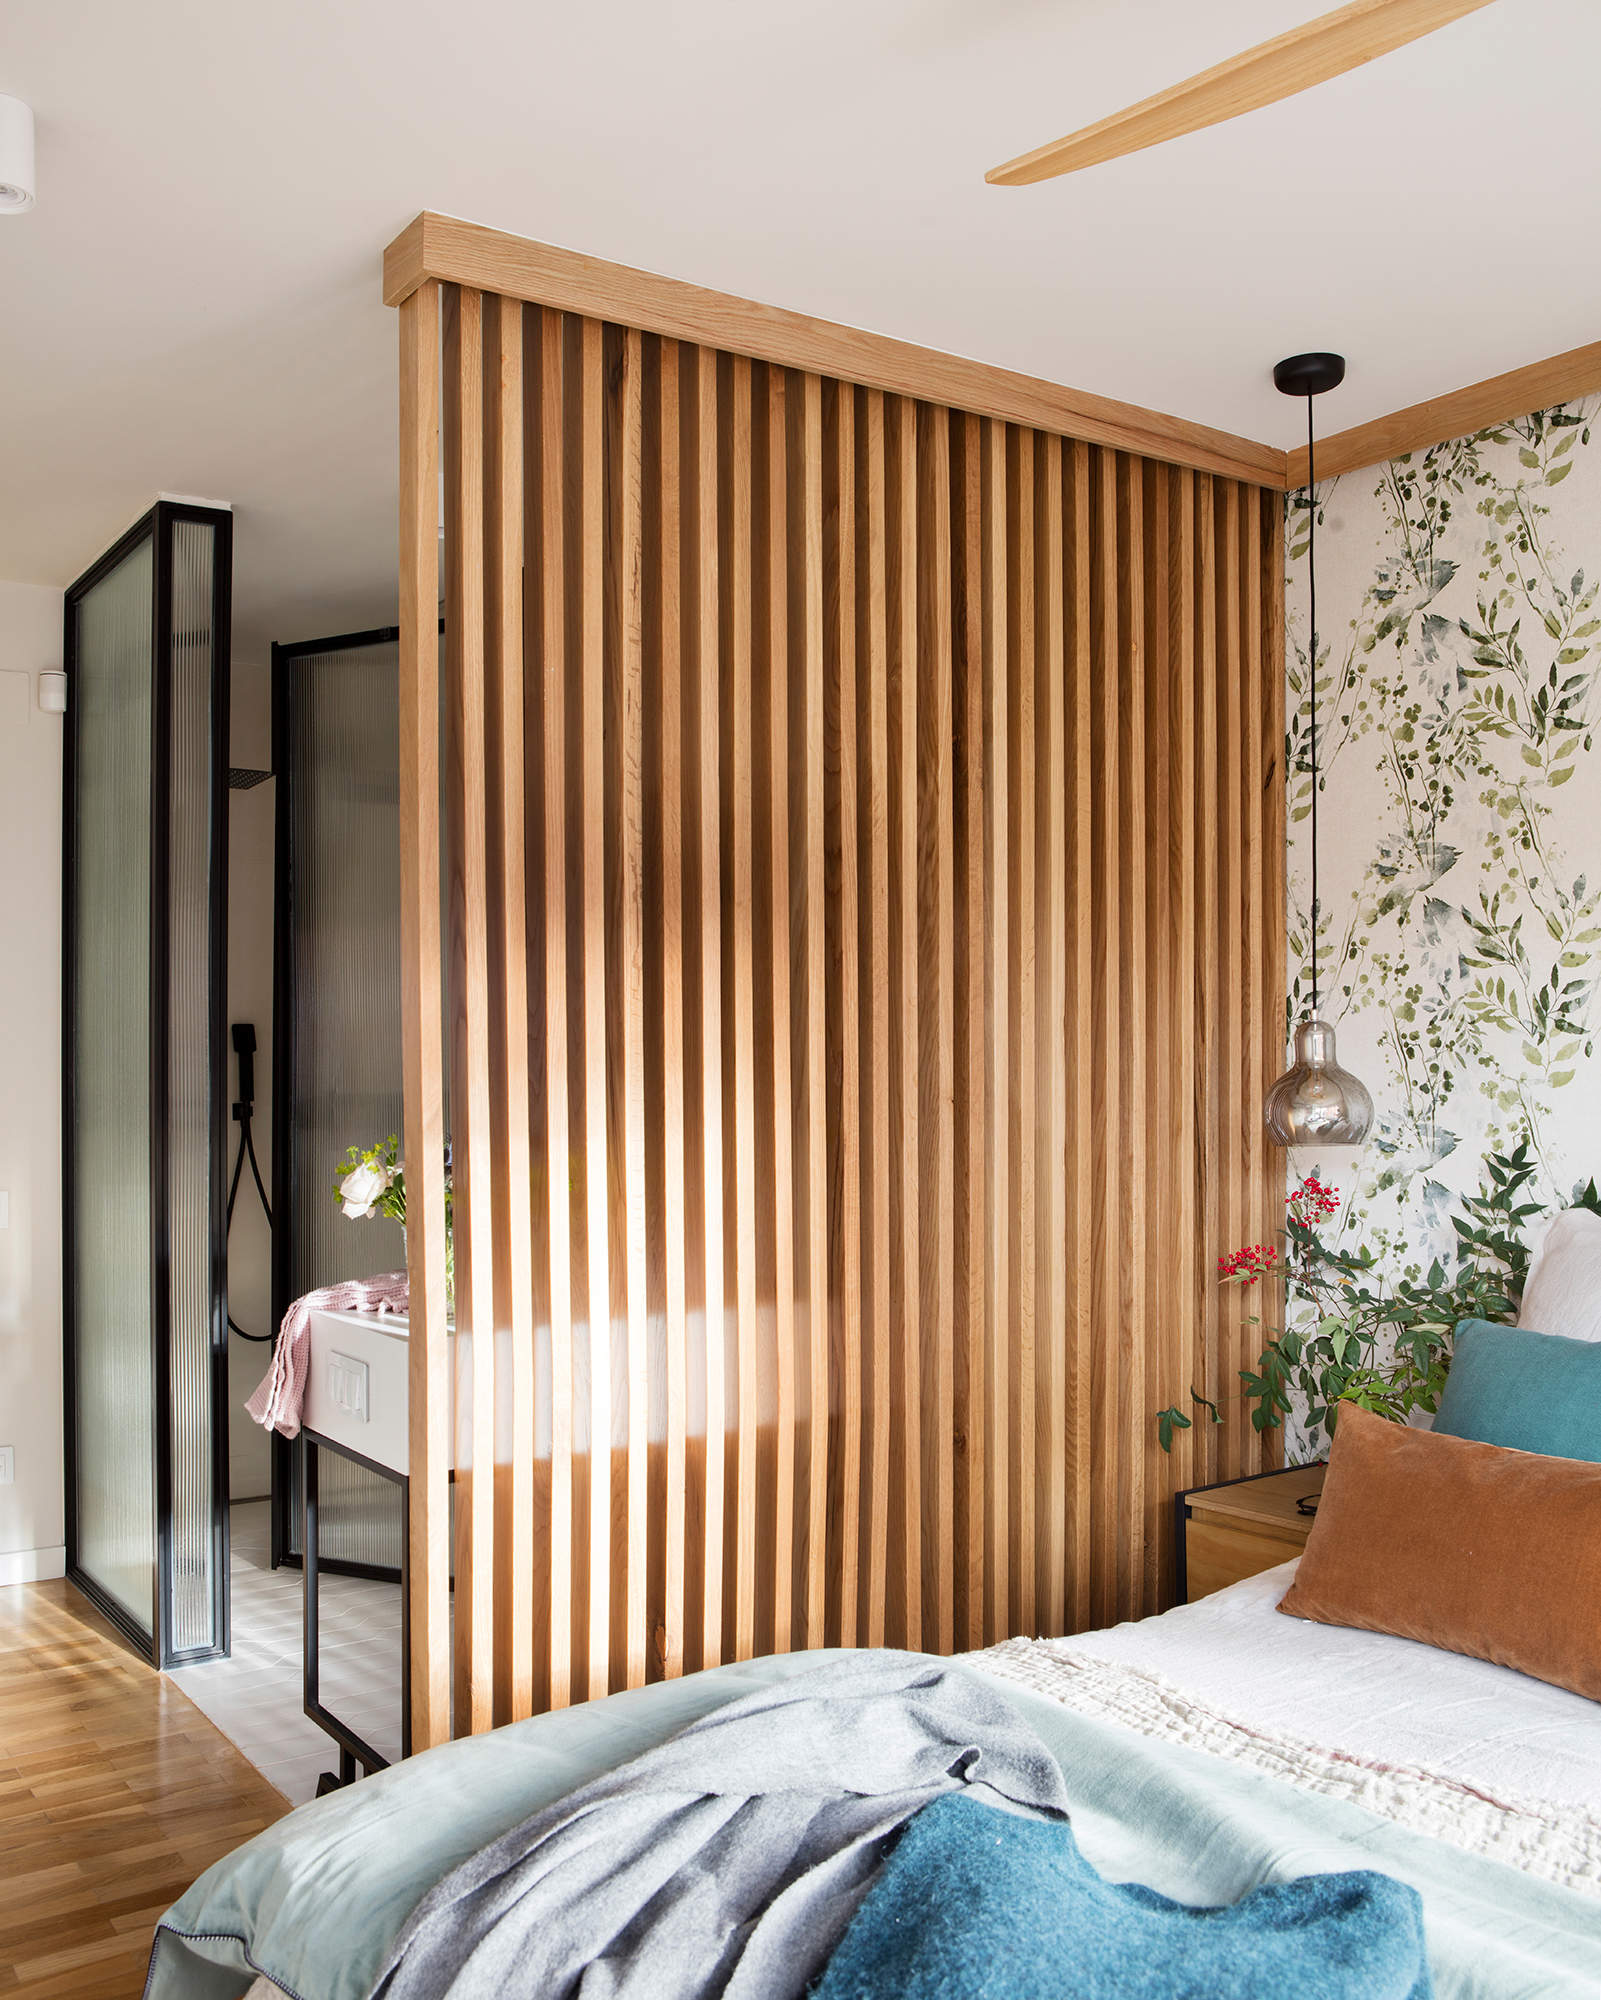 Panel de listones de madera en el dormitorio.